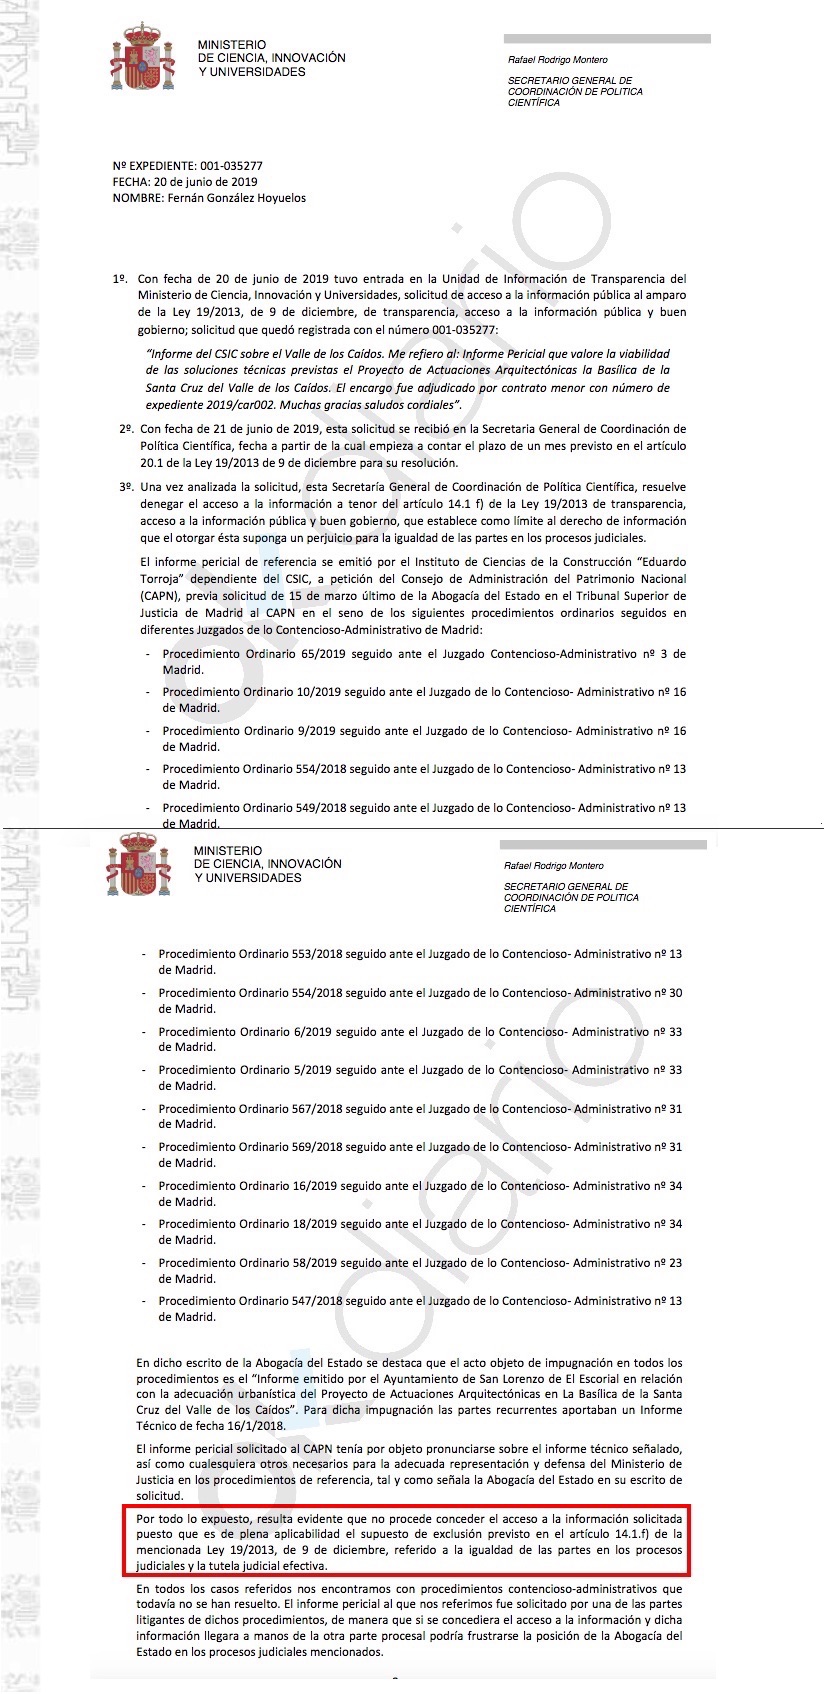 Documento remitido a OKDIARIO sobre la exhumación de Franco. (Clic para ampliar)